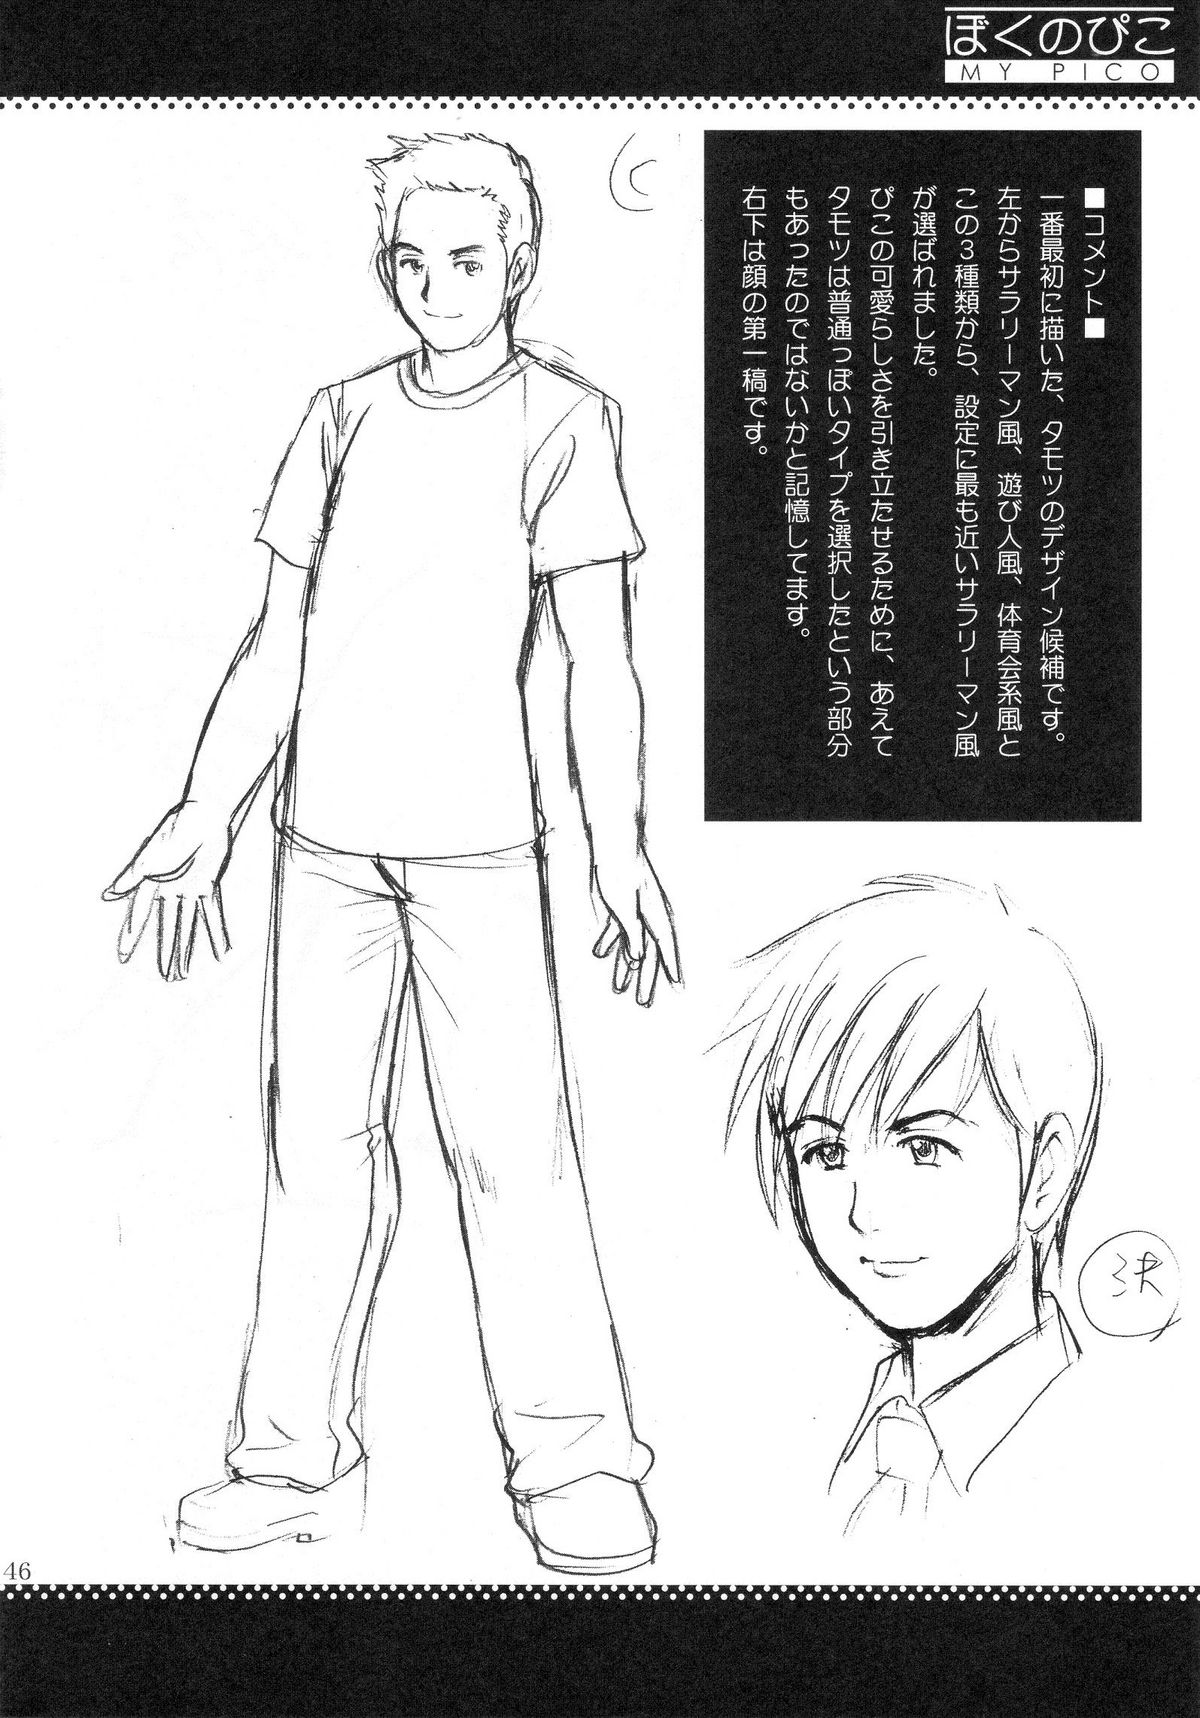 (COMIC1) [Saigado] Boku no Pico Comic + Koushiki Character Genanshuu (Boku no Pico) page 44 full